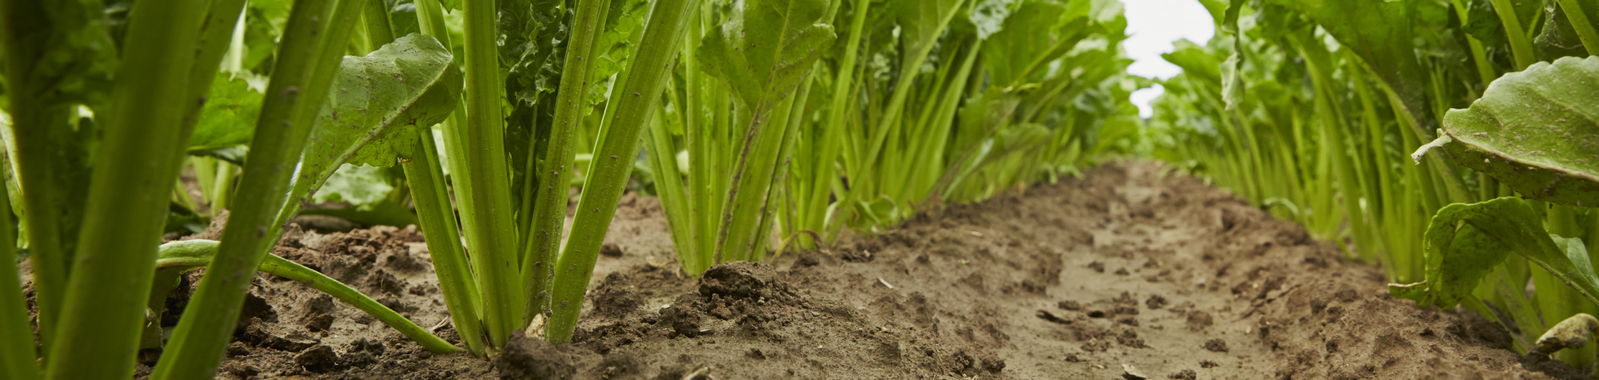 Agronomische Prinzipien im Zuckerrüben-Anbau